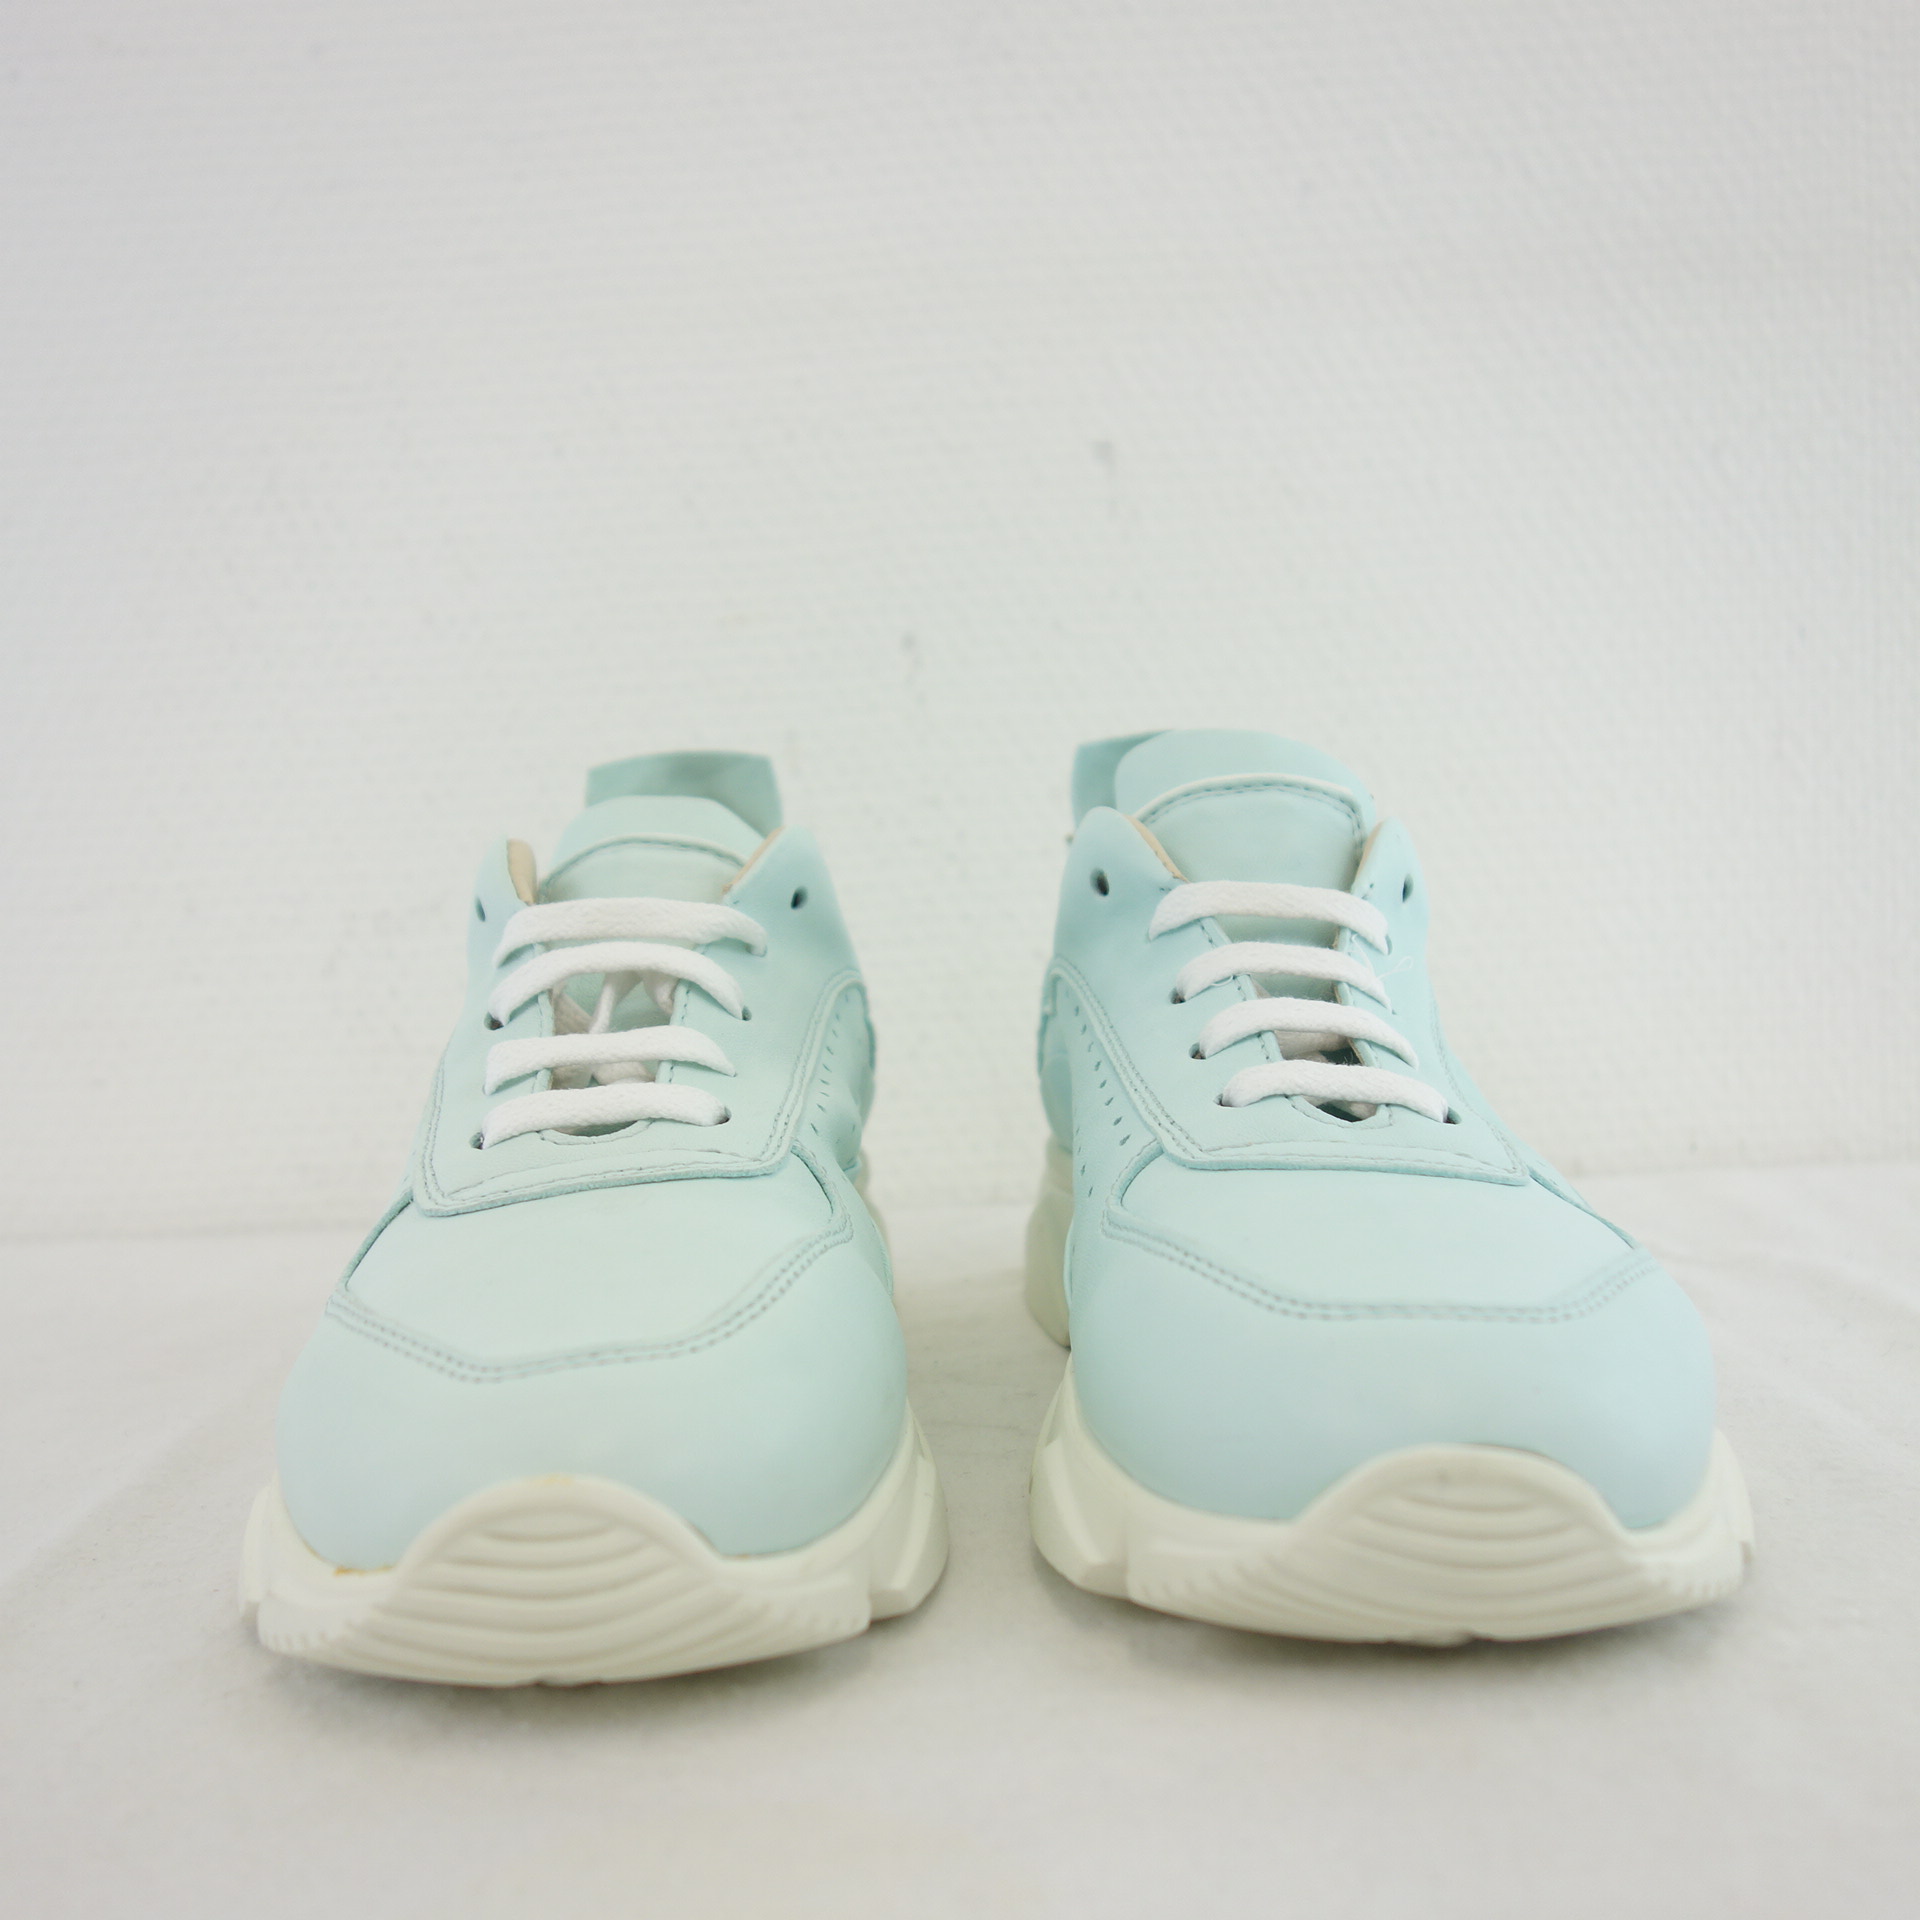 MOMA Damen Schuhe Low Top Sneaker Sportschuh Mint Hellblau Leder 38,5